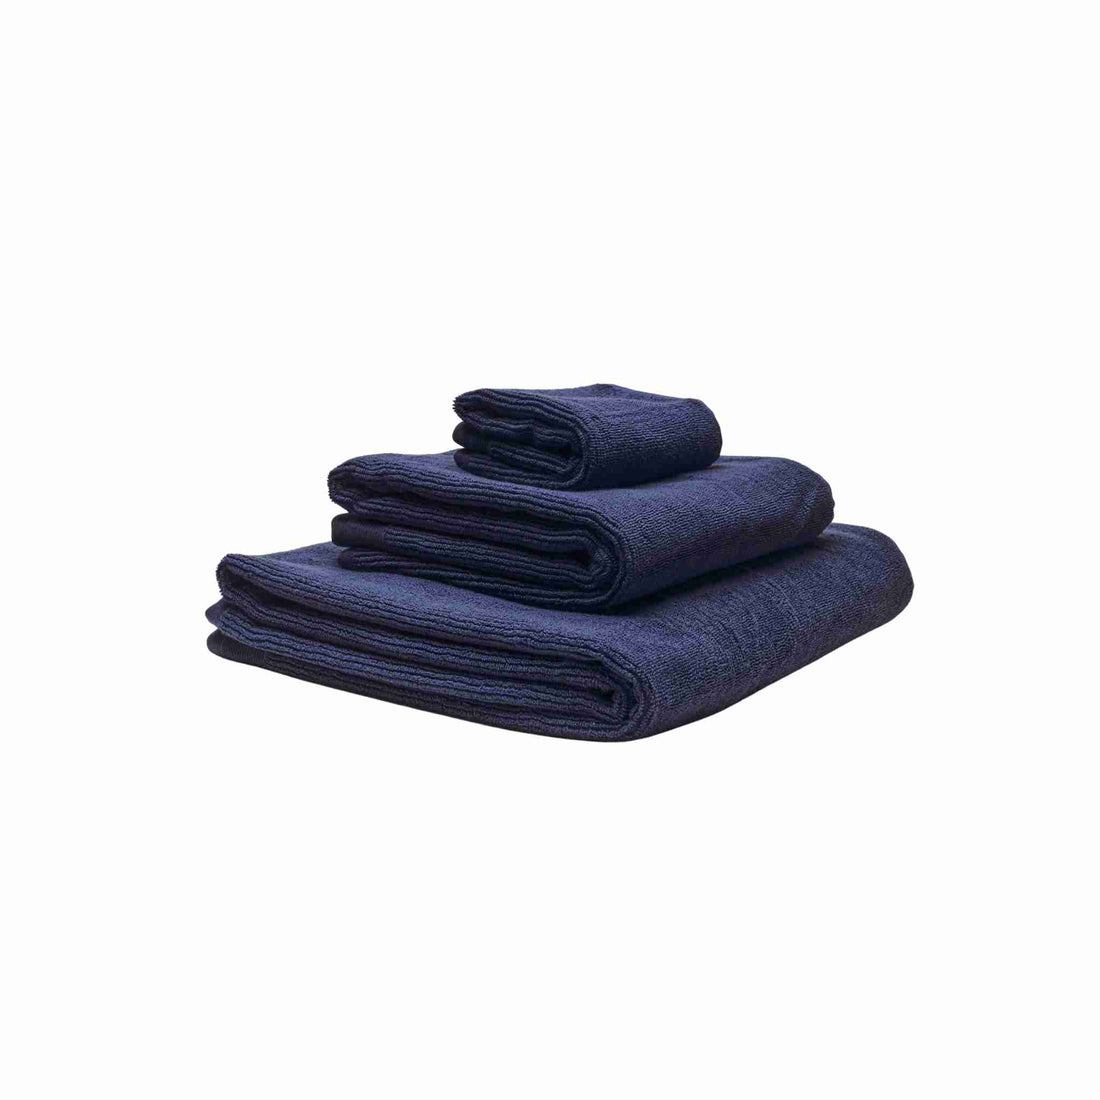 økologiske håndklæder i farven mørkeblå